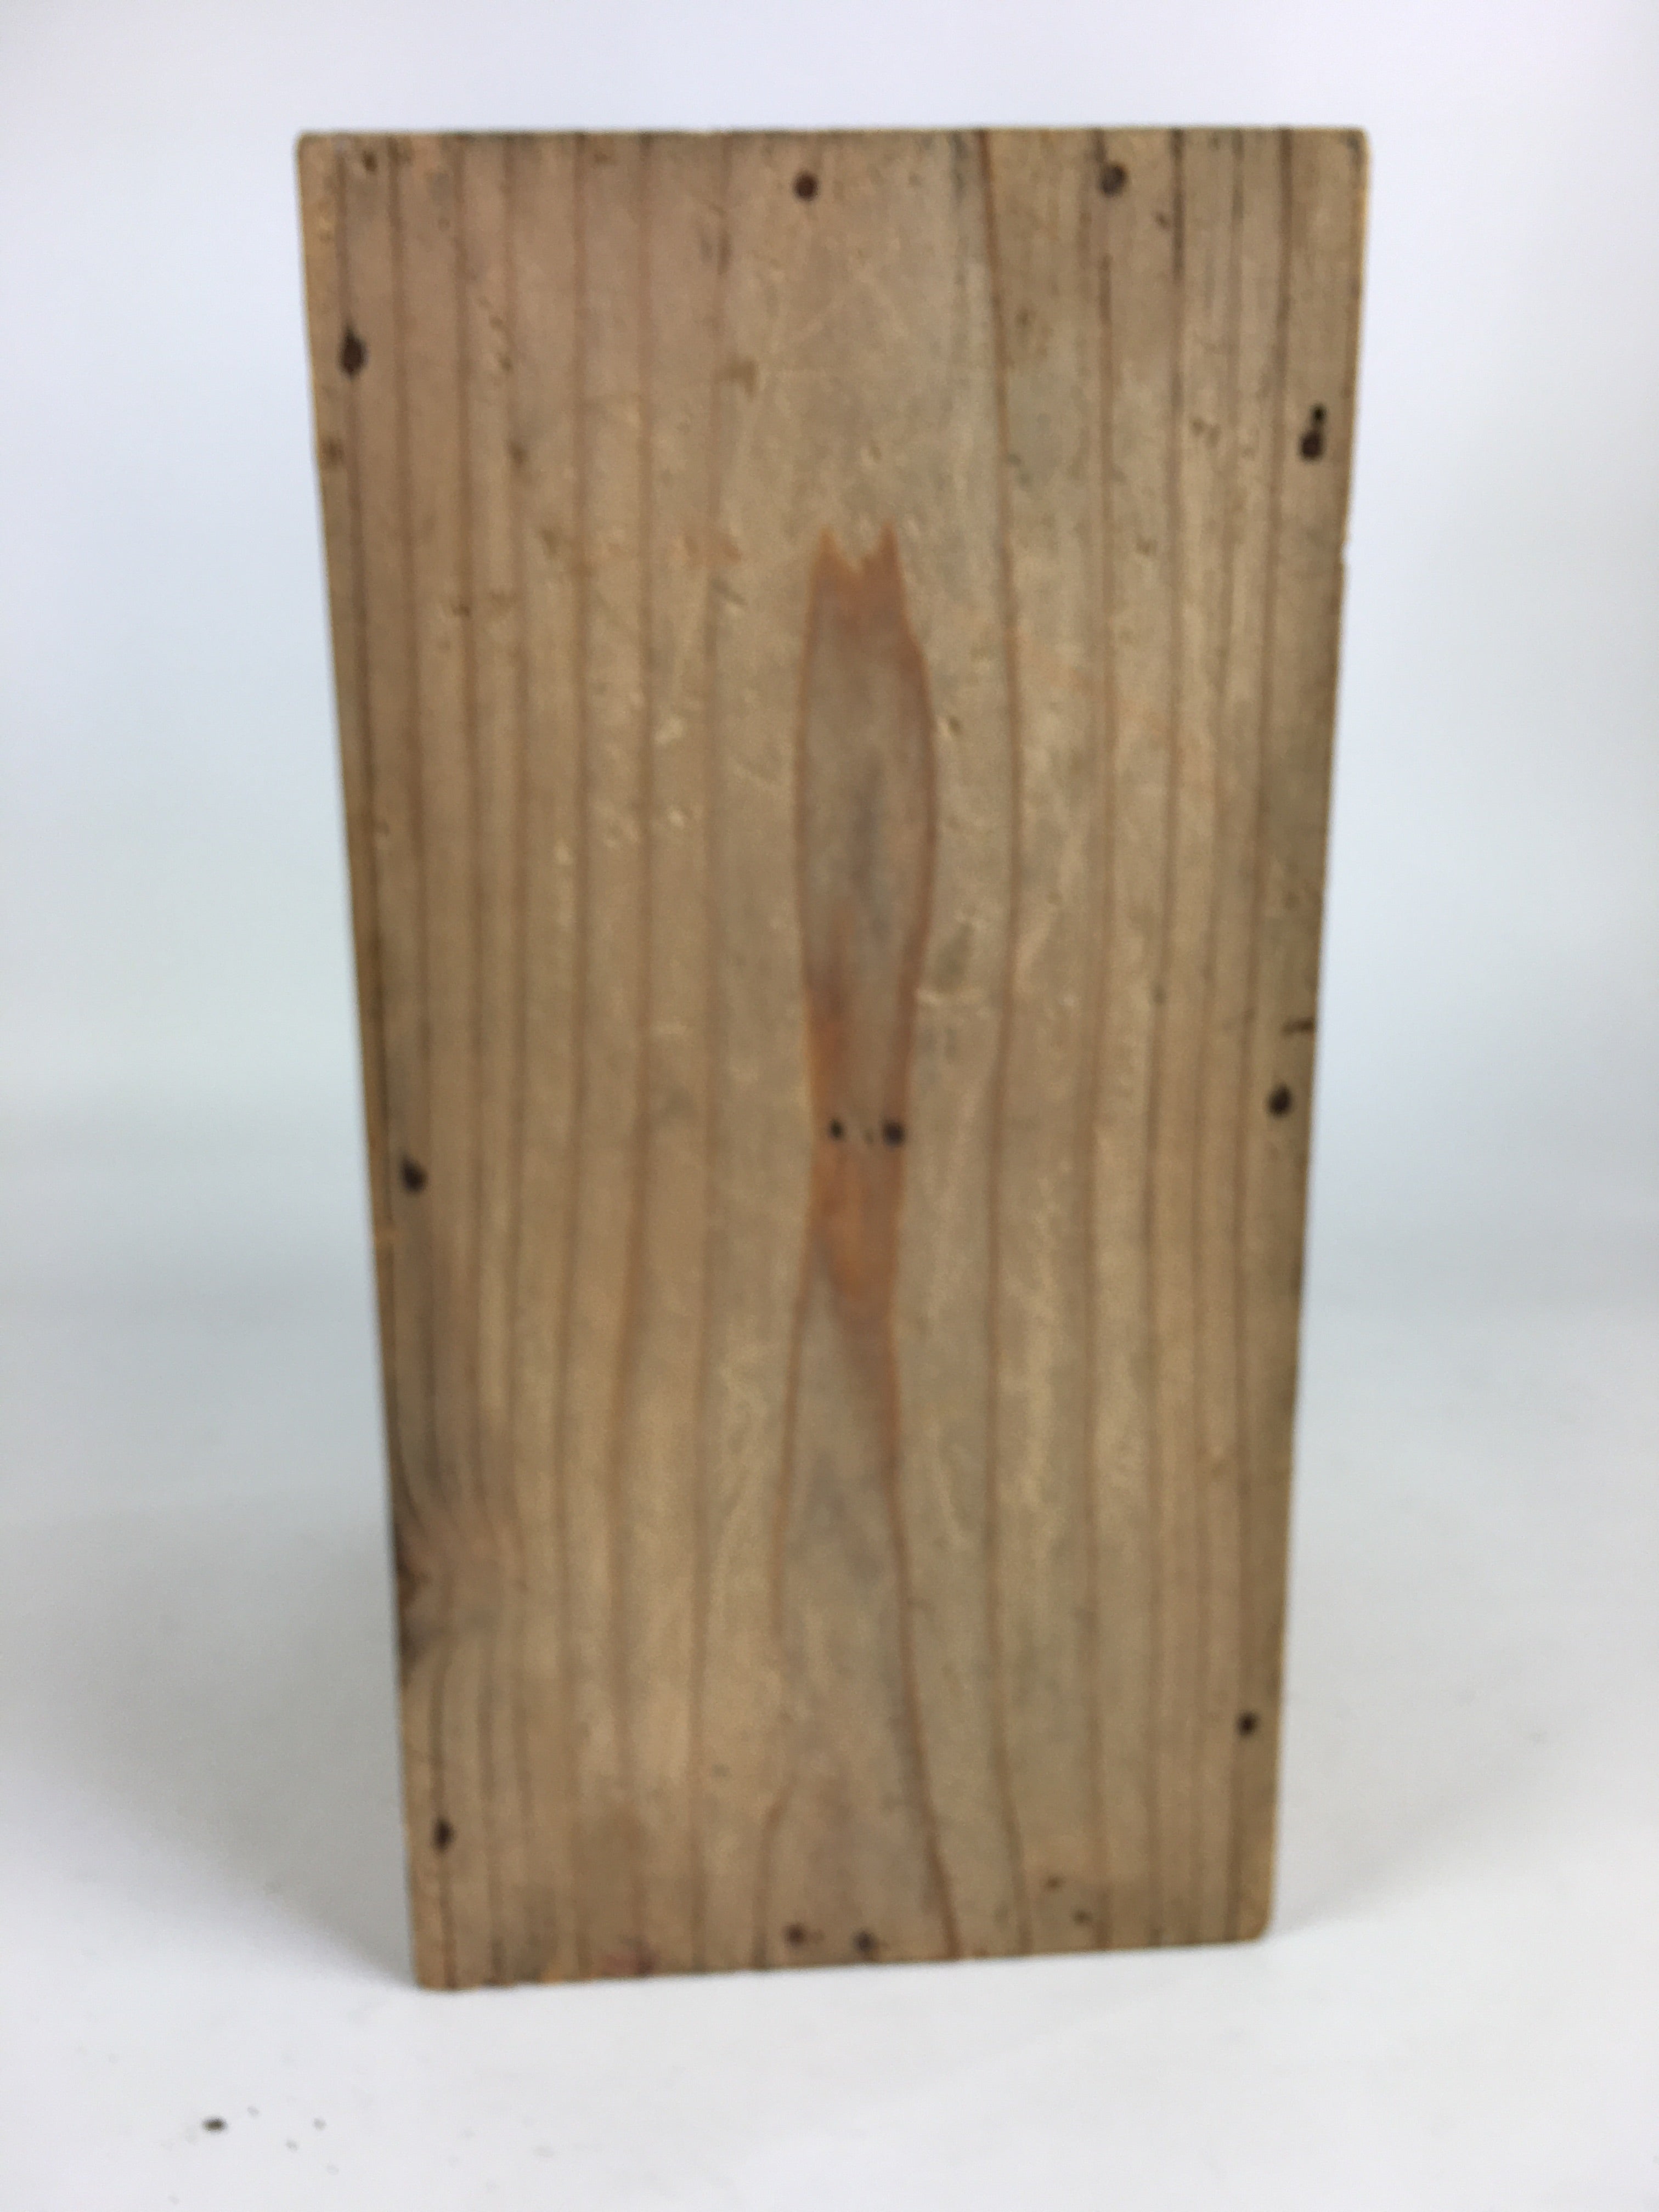 Japanese Wooden Storage Box Vtg Pottery Hako Inside 13.5x28.5x22cm WB897